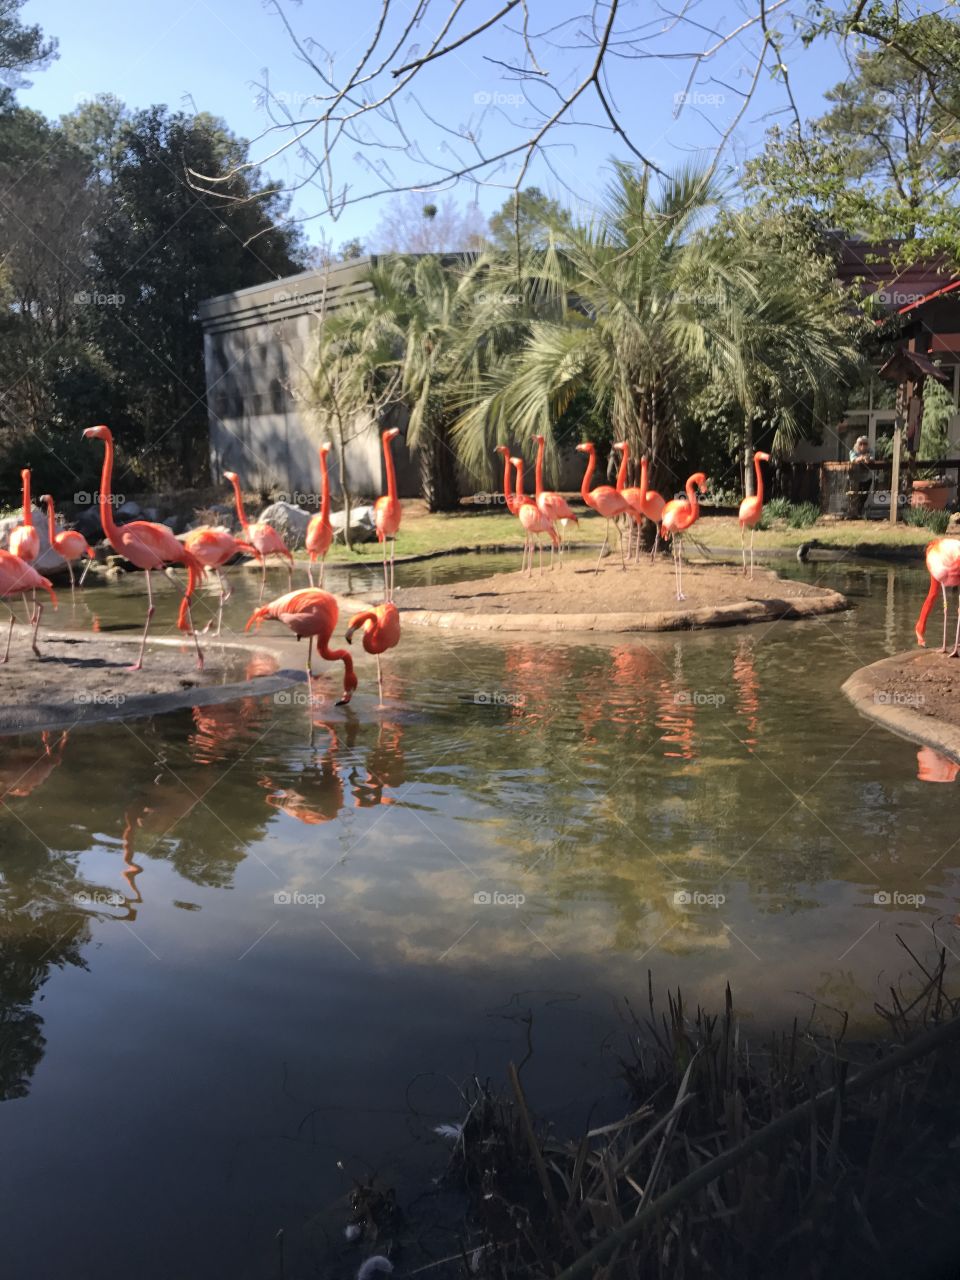 Flamingos at Riverbanks Zoo